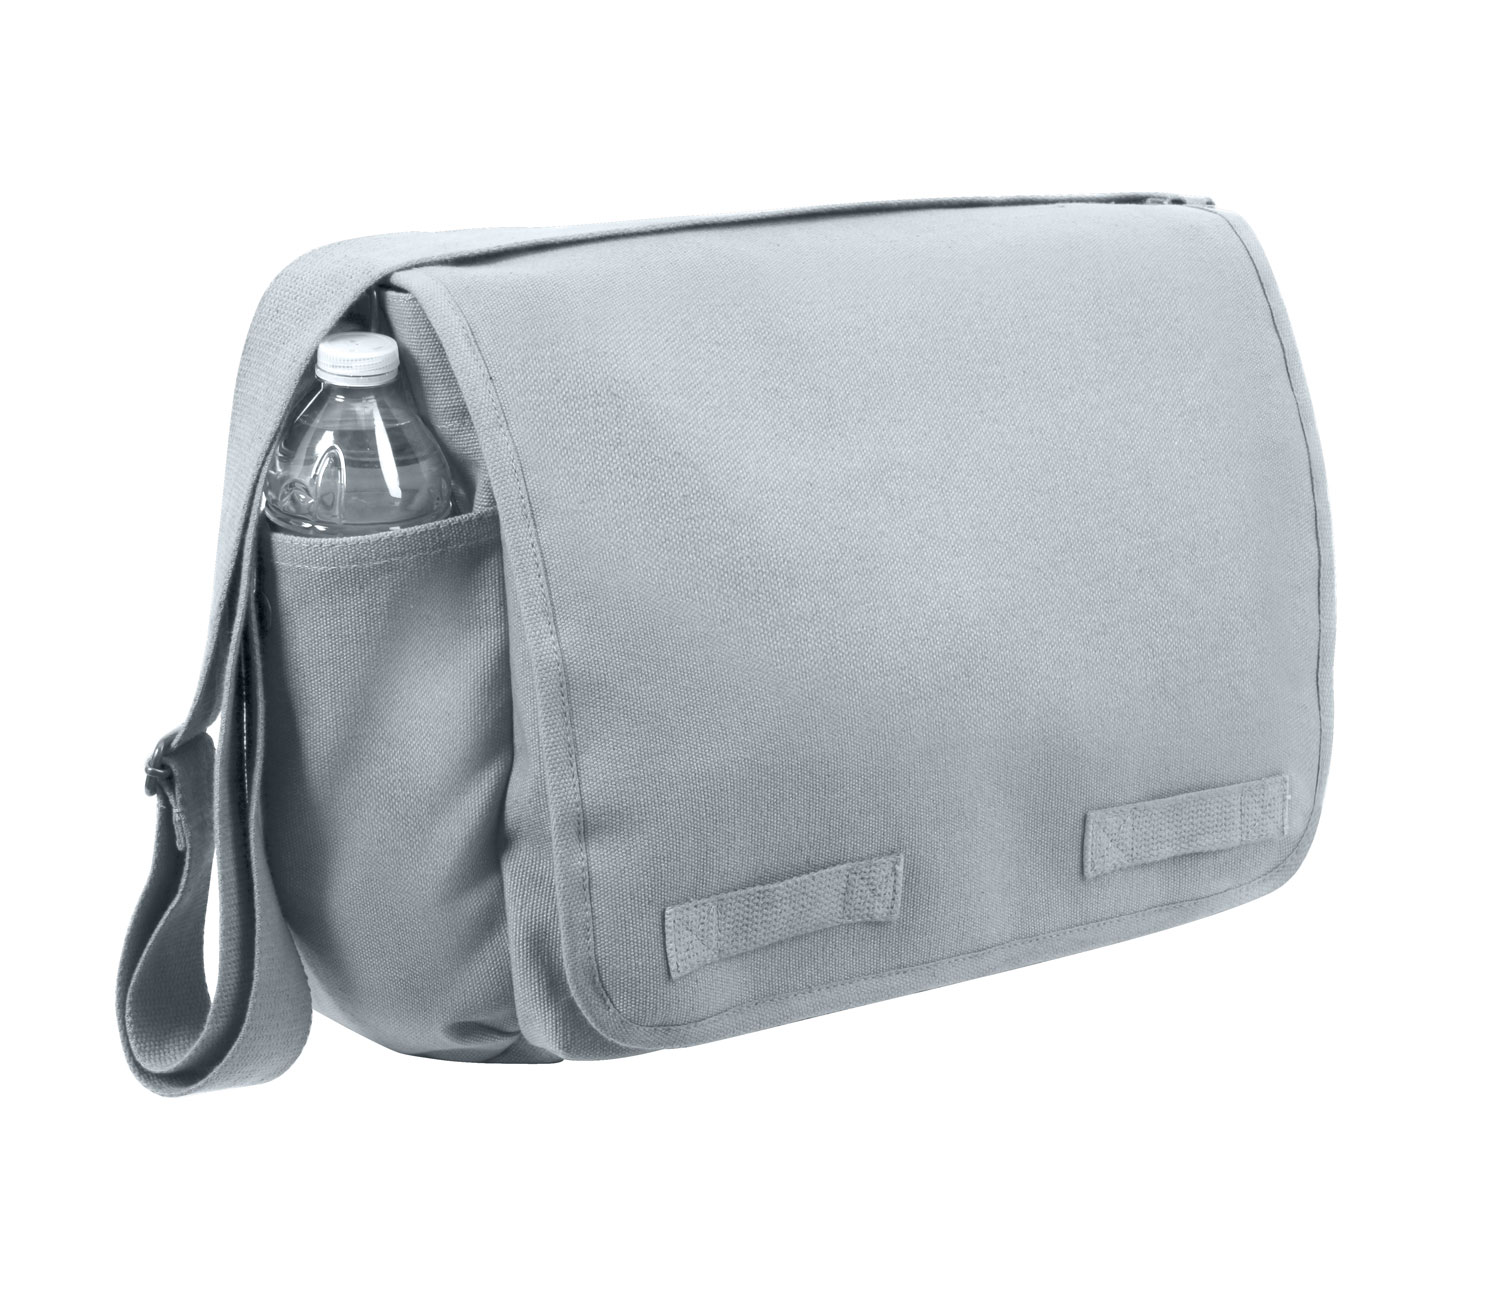 Rothco Classic Canvas Messenger Bag, Grey - image 1 of 3